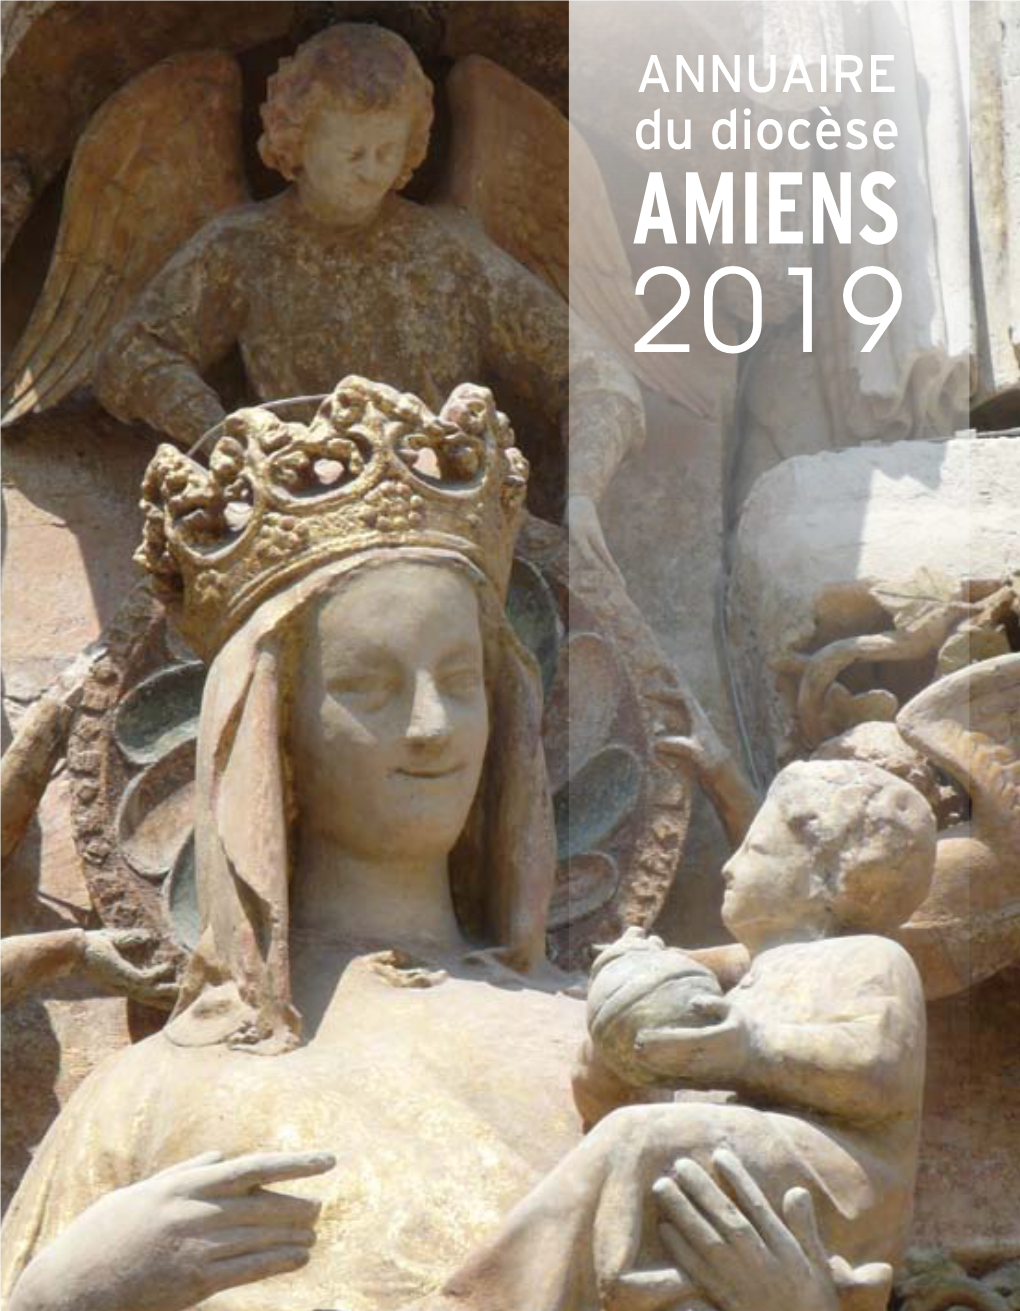 Du Diocèse Amiens 2019 AMIENS Annuaire Diocésain Etat Au 15 Novembre 2018